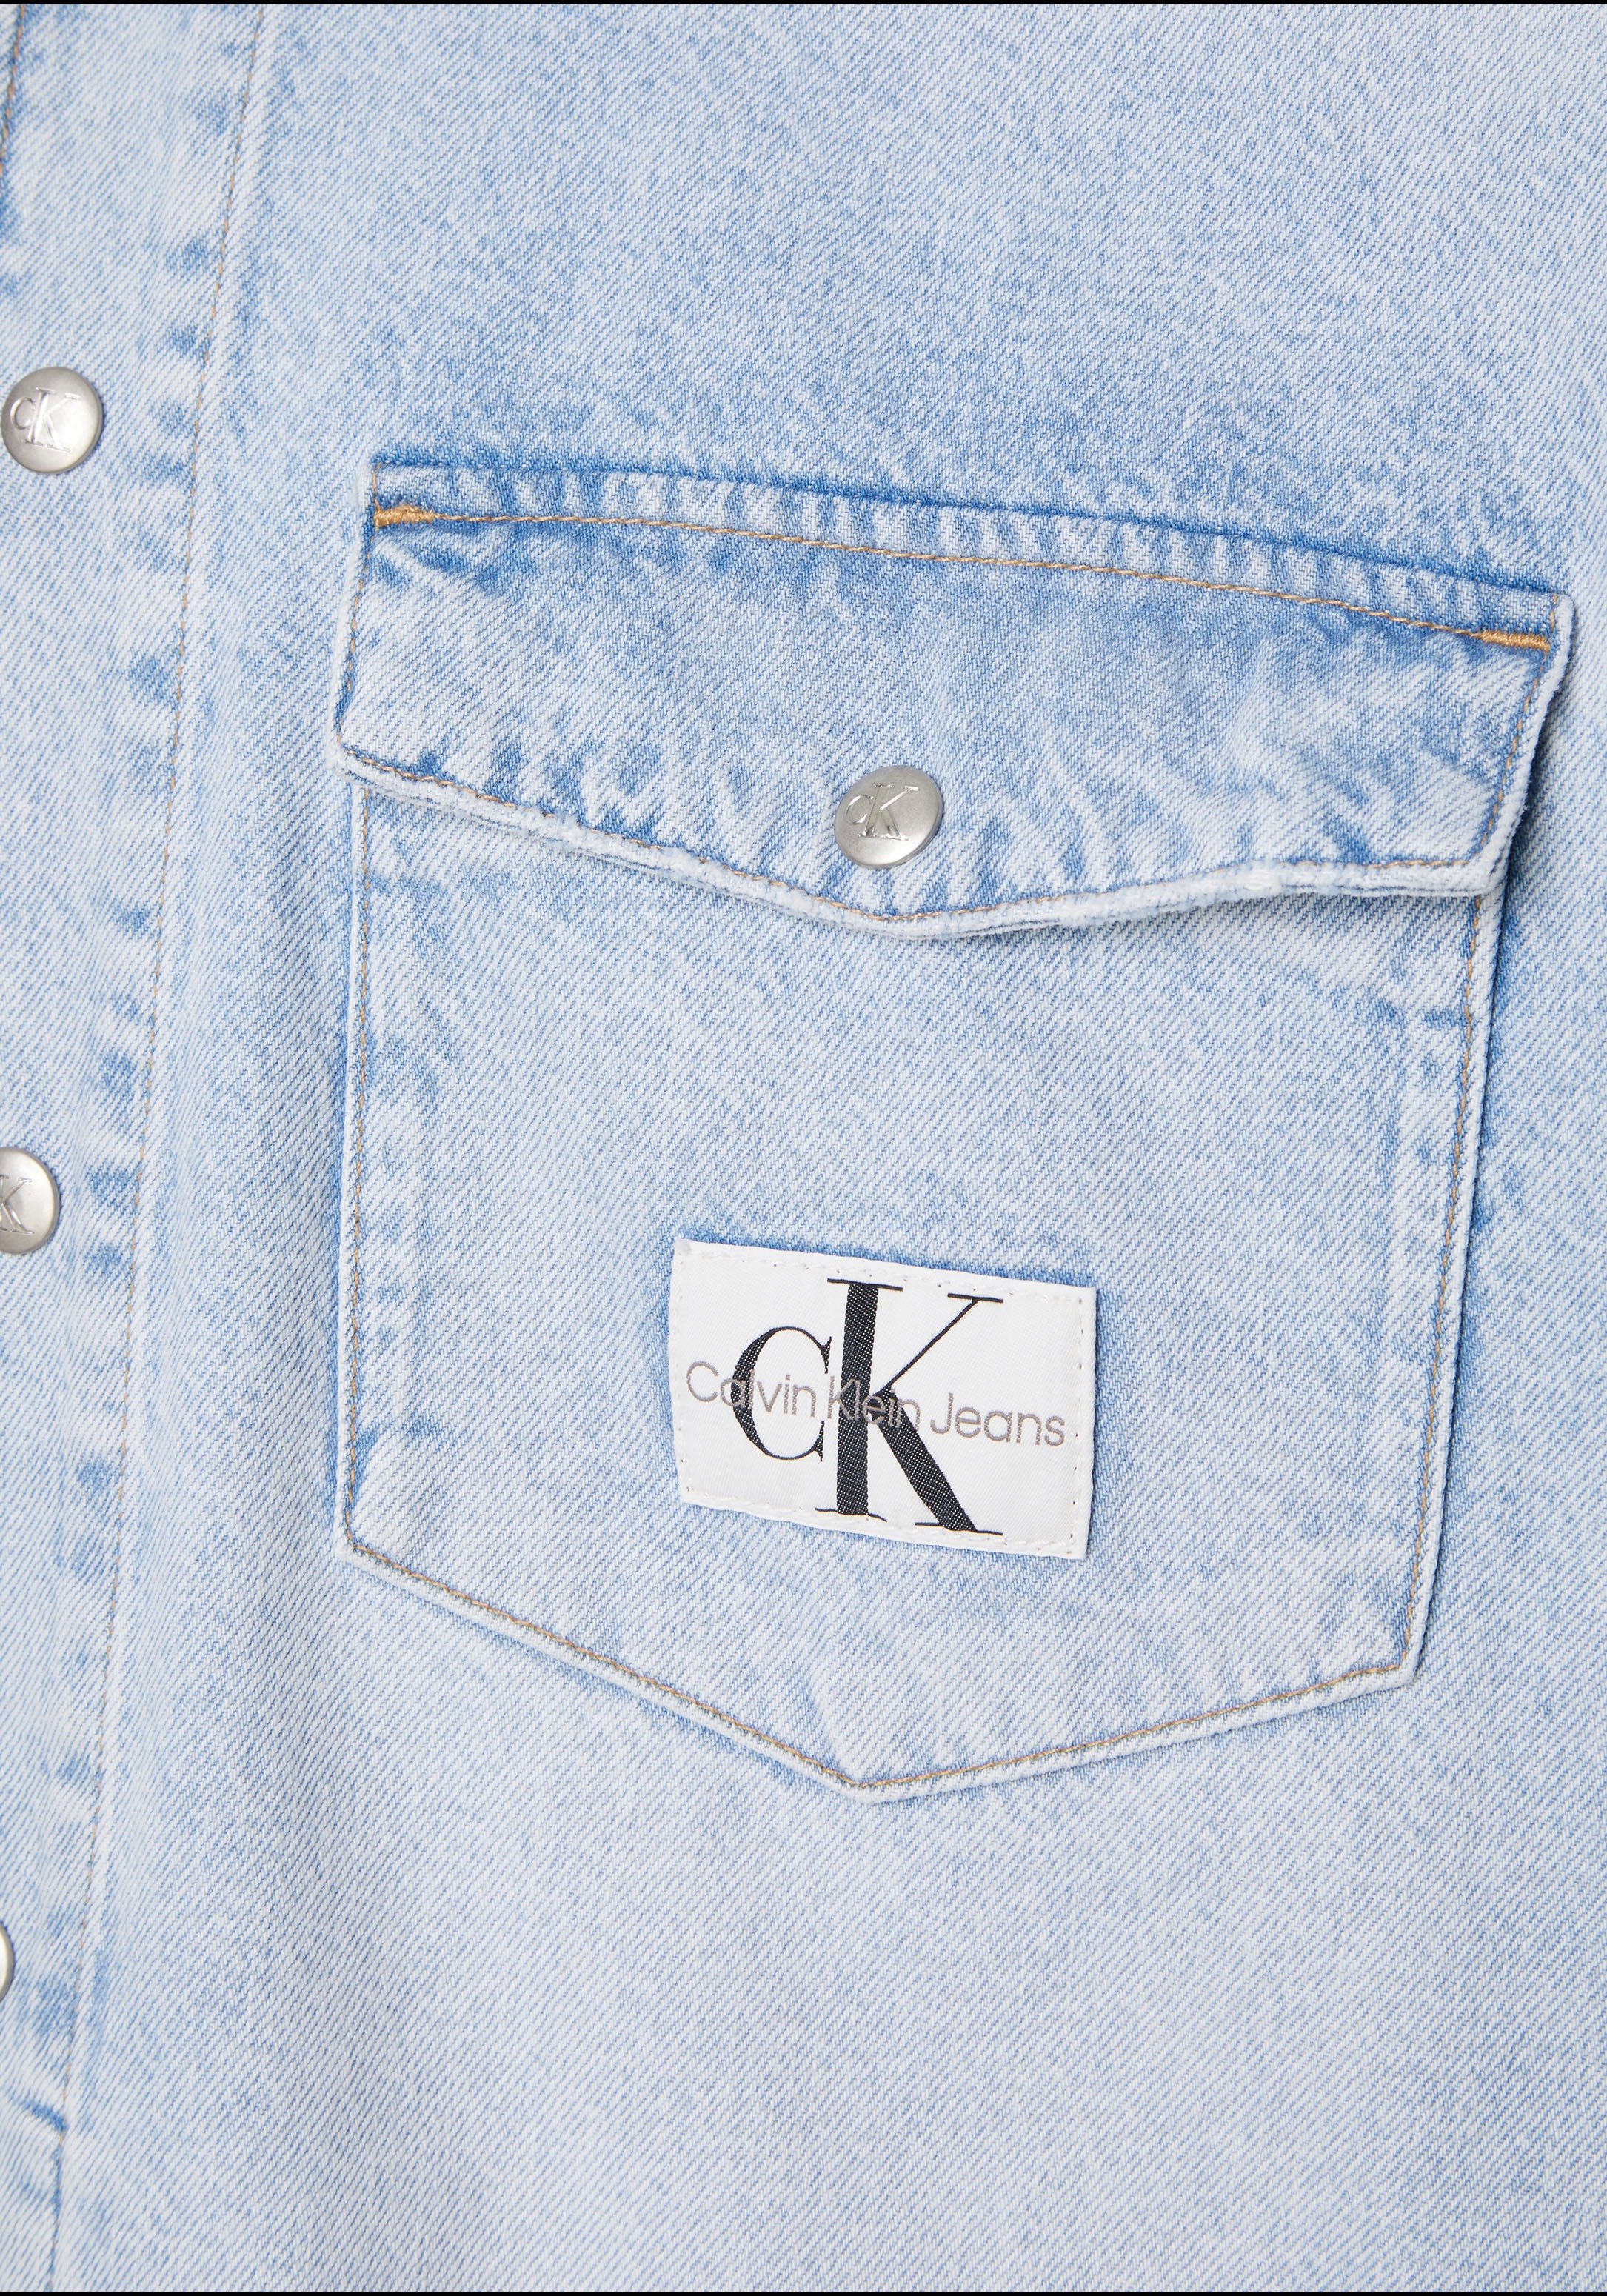 Klein bei Calvin SHIRT JACKET«, Jeanshemd Klein Logo-Badge ♕ Calvin der Brusttasche auf Jeans »OVERSIZED mit UTILITY